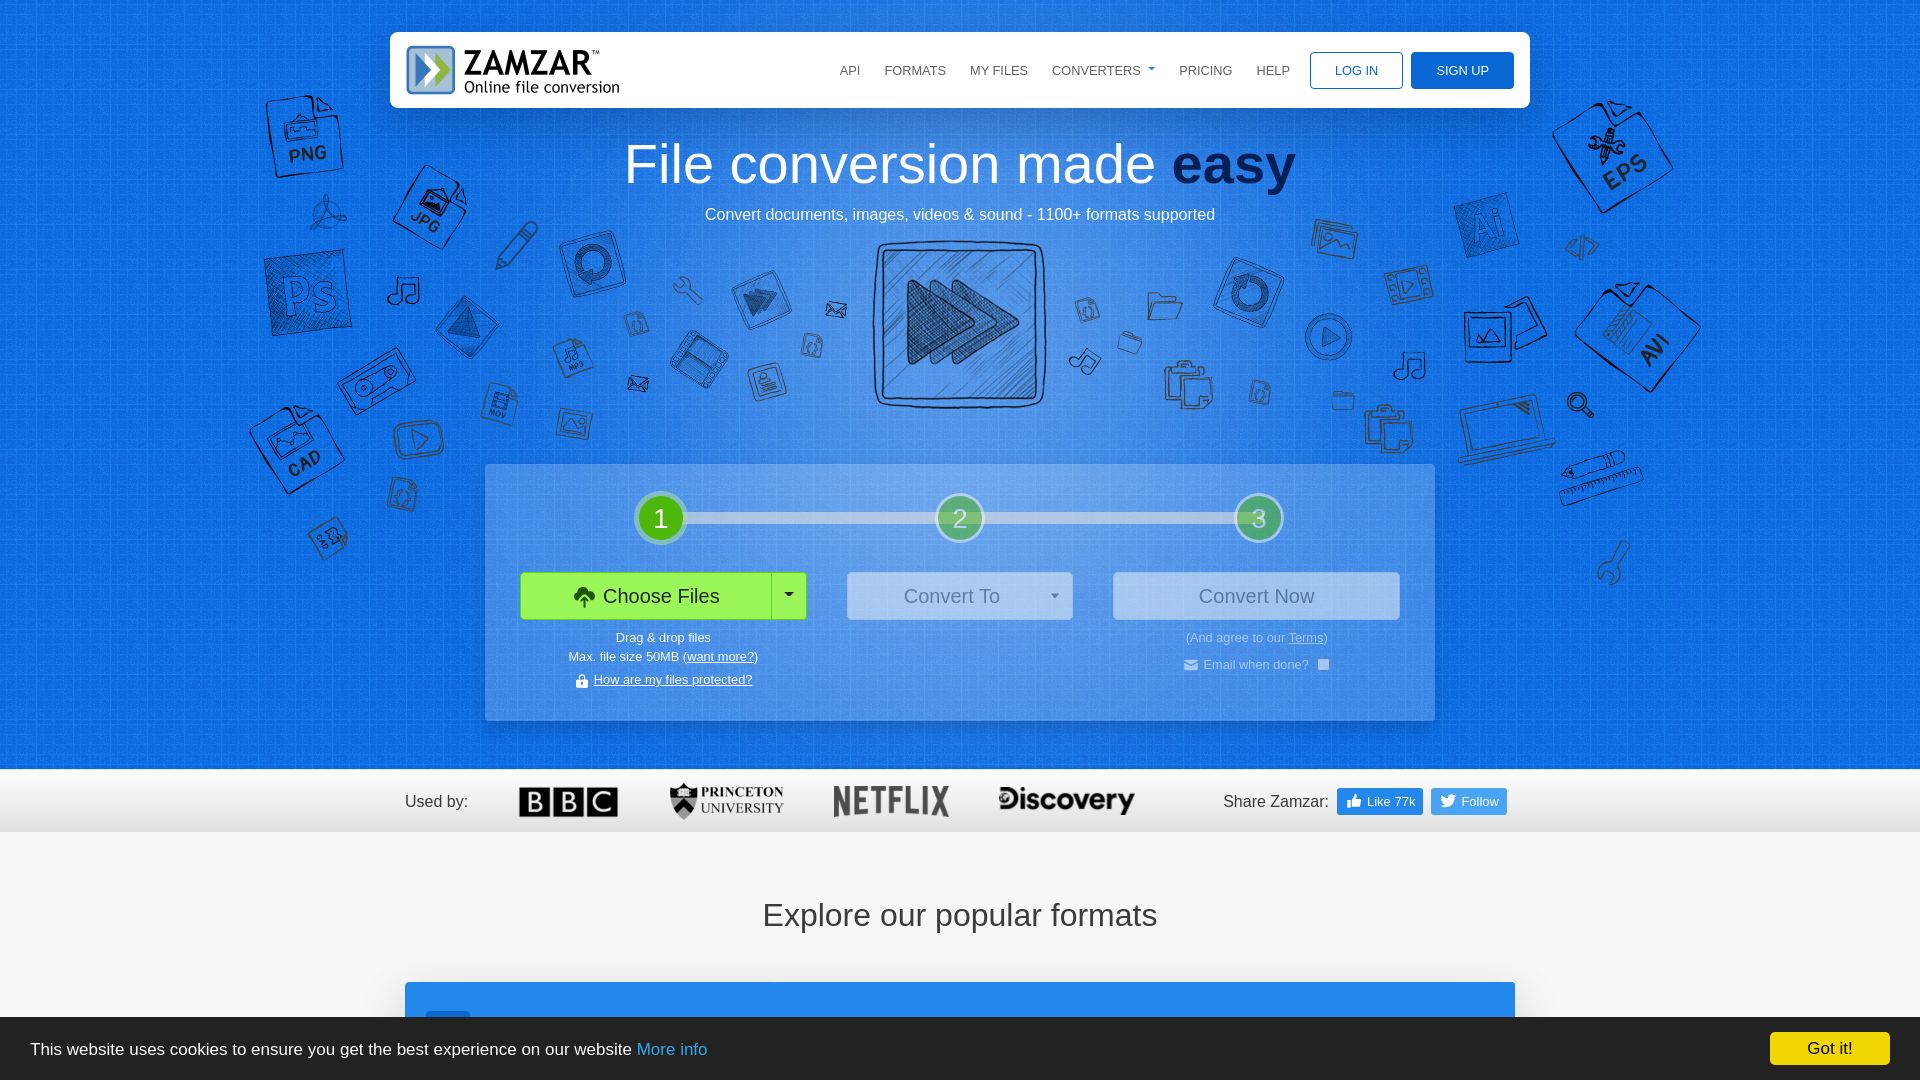 网站状态 zamzar.com 是  在线的